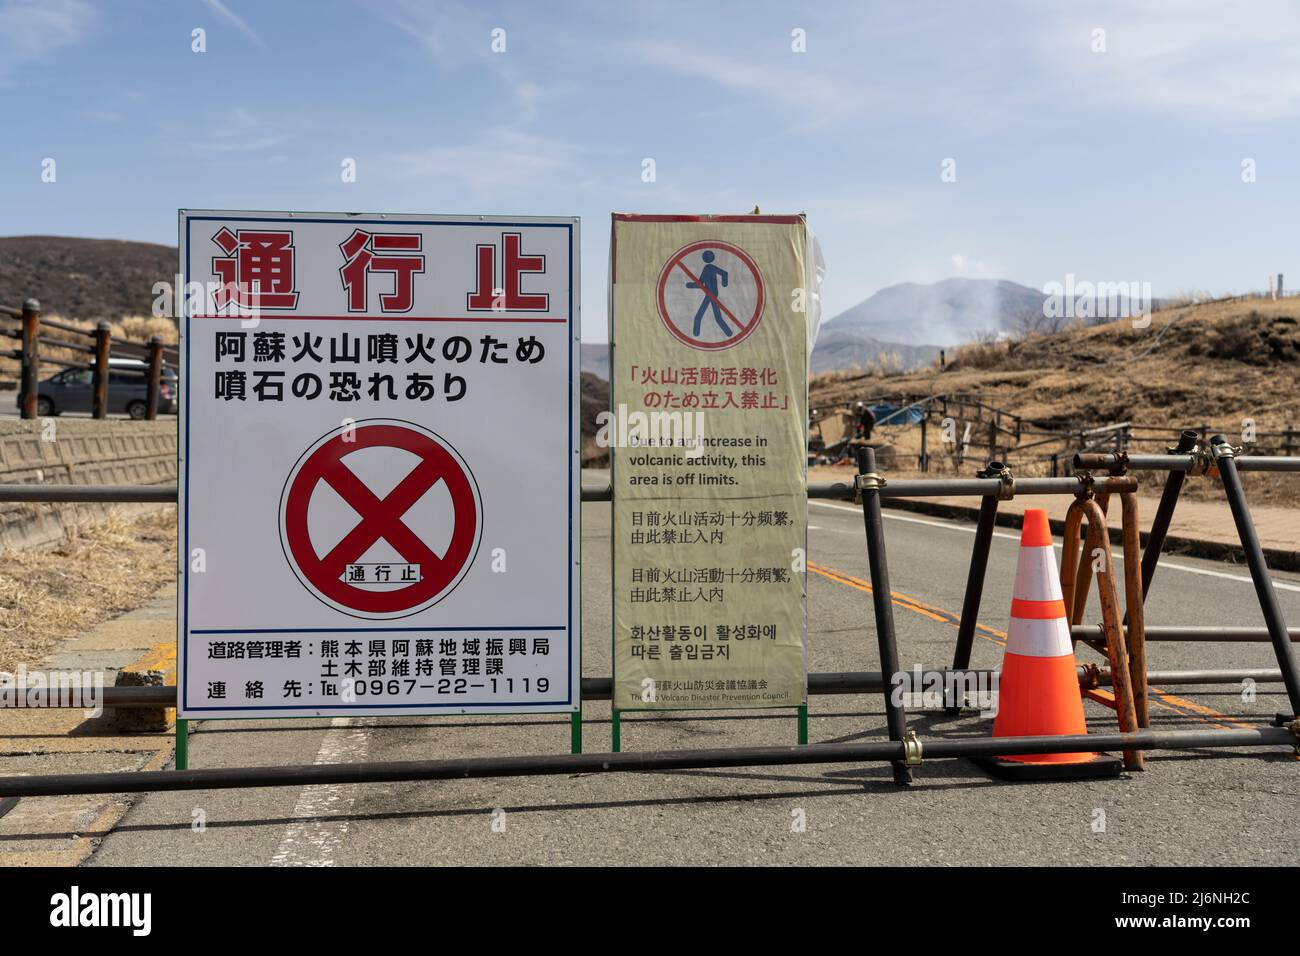 Cierre de la carretera y cierre de la zona debido al nivel de actividad volcánica. Mt, Aso, Aso City, Kumamoto, Kyushu, Japón Foto de stock